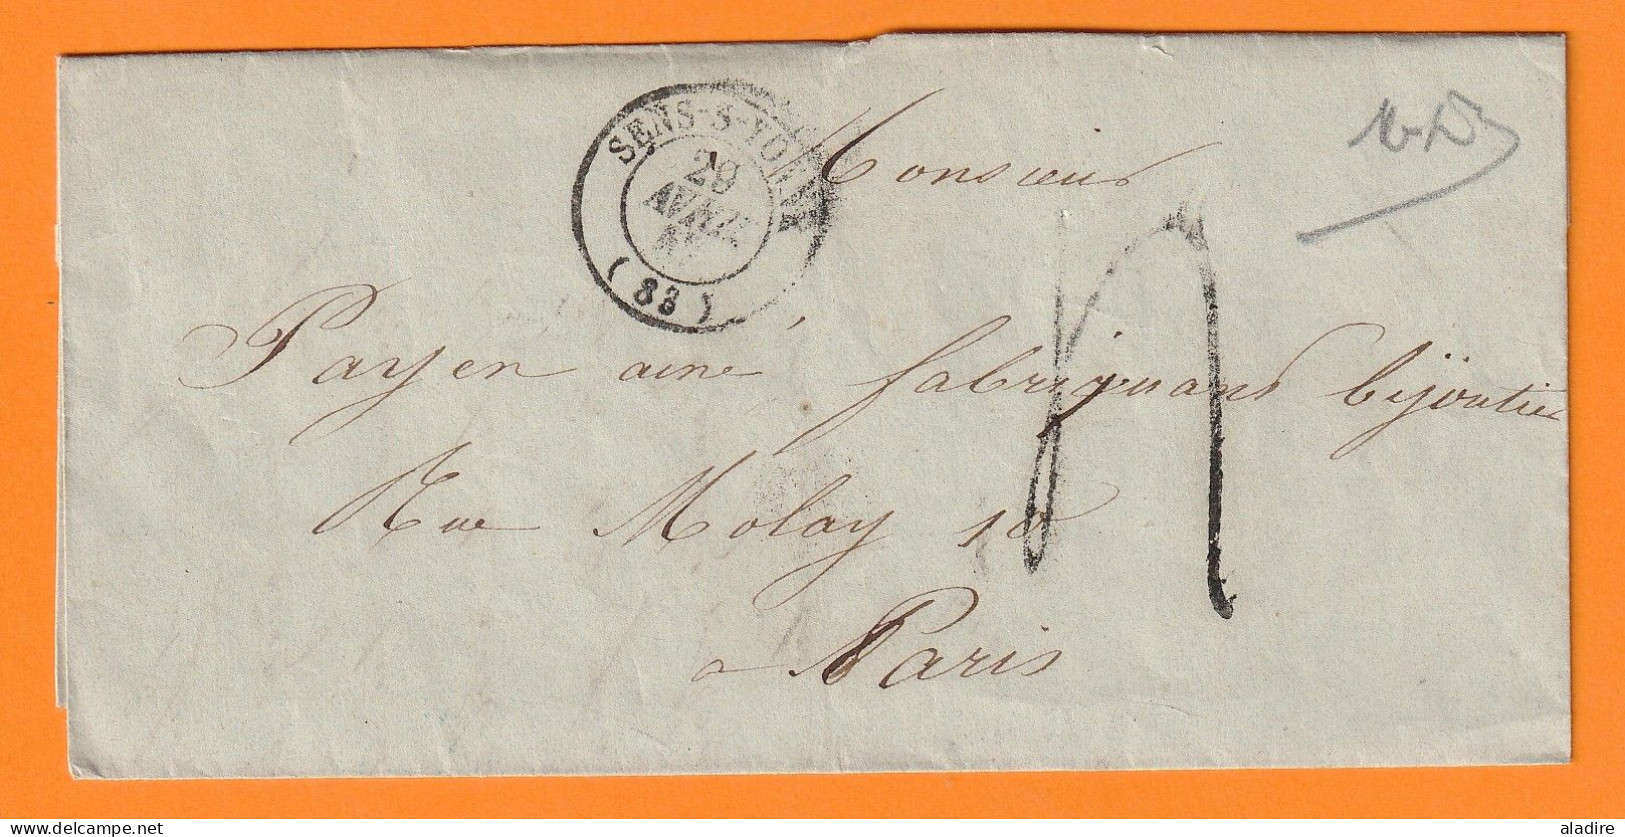 1847 - Lettre Pliée Avec Correspondance De Sens Sur Yonne Vers Paris - Route De Genève - Taxe 4 - 1801-1848: Précurseurs XIX